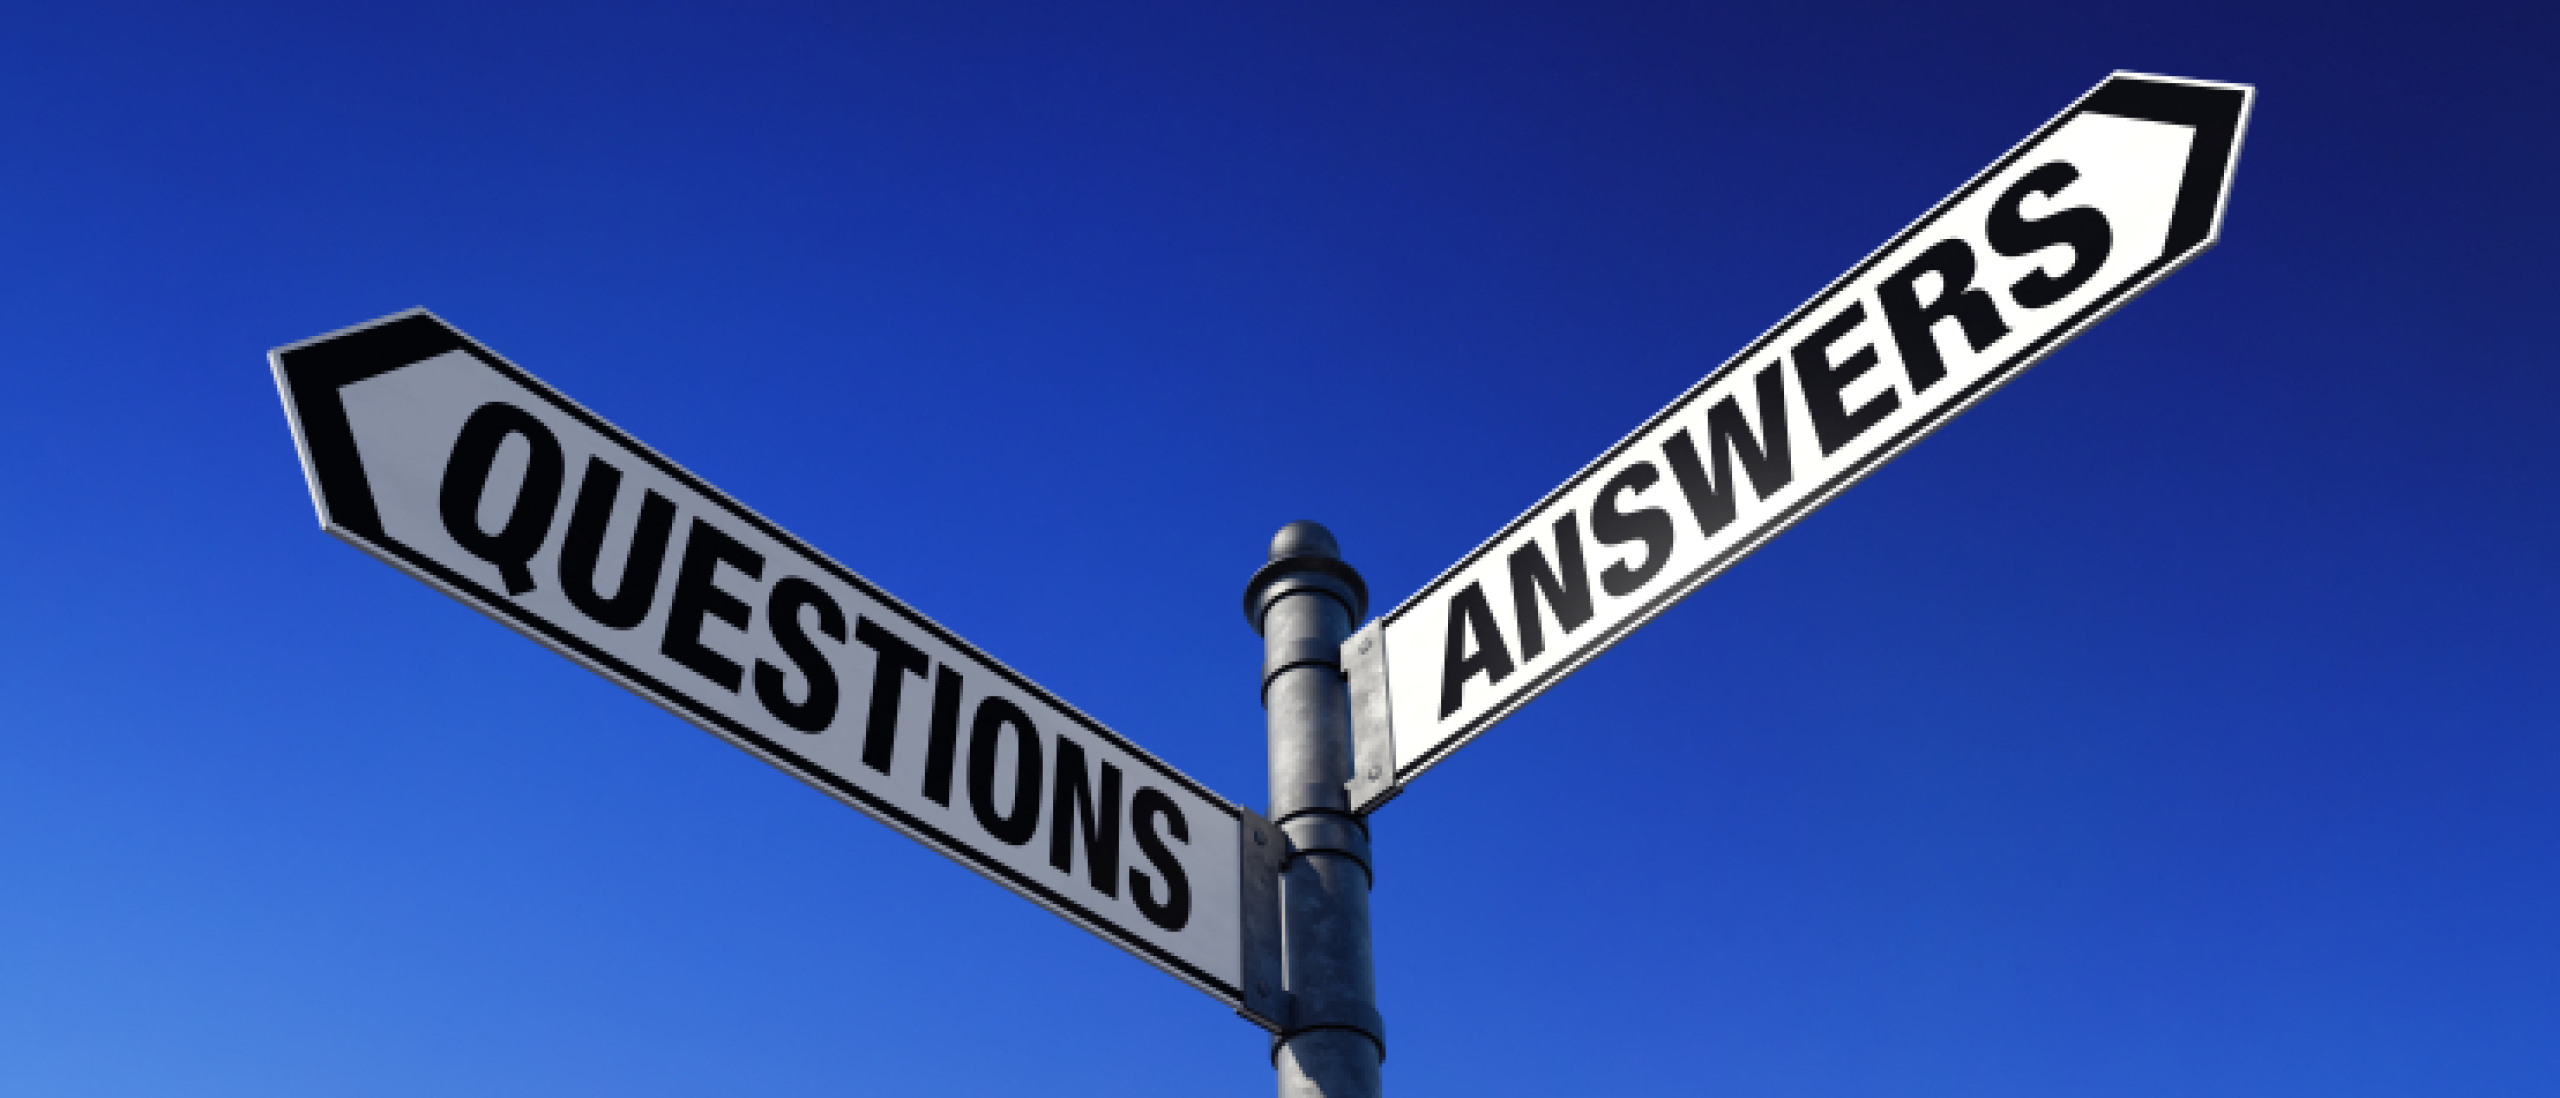 De 10 belangrijkste vragen die ervoor zorgen dat je hulp van je stakeholders krijgt